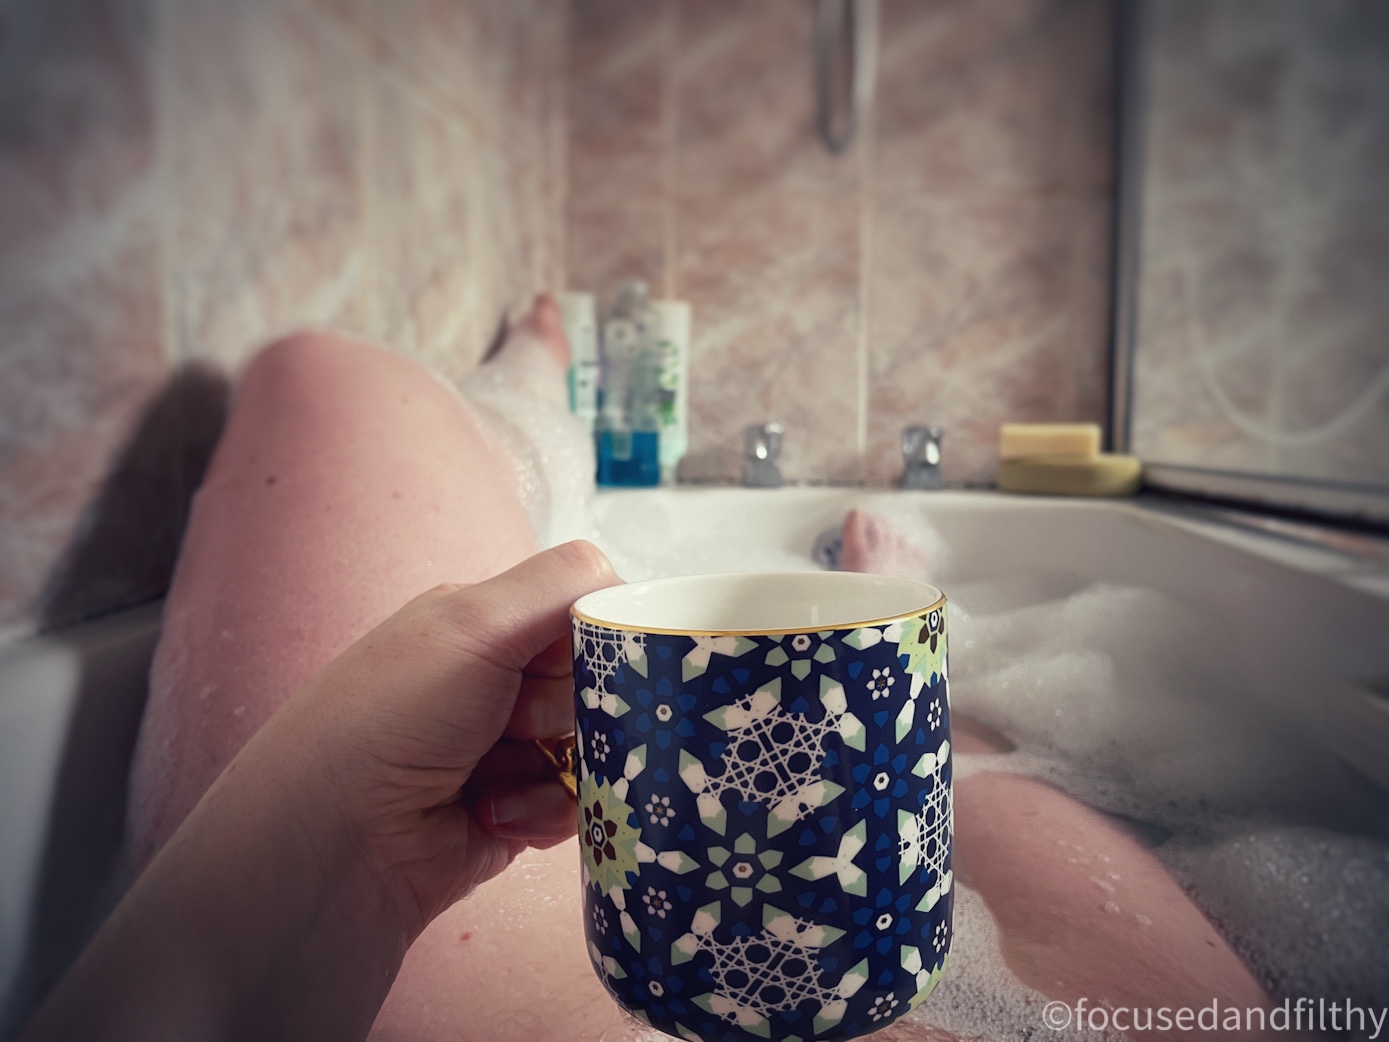 Hot bath with hot tea